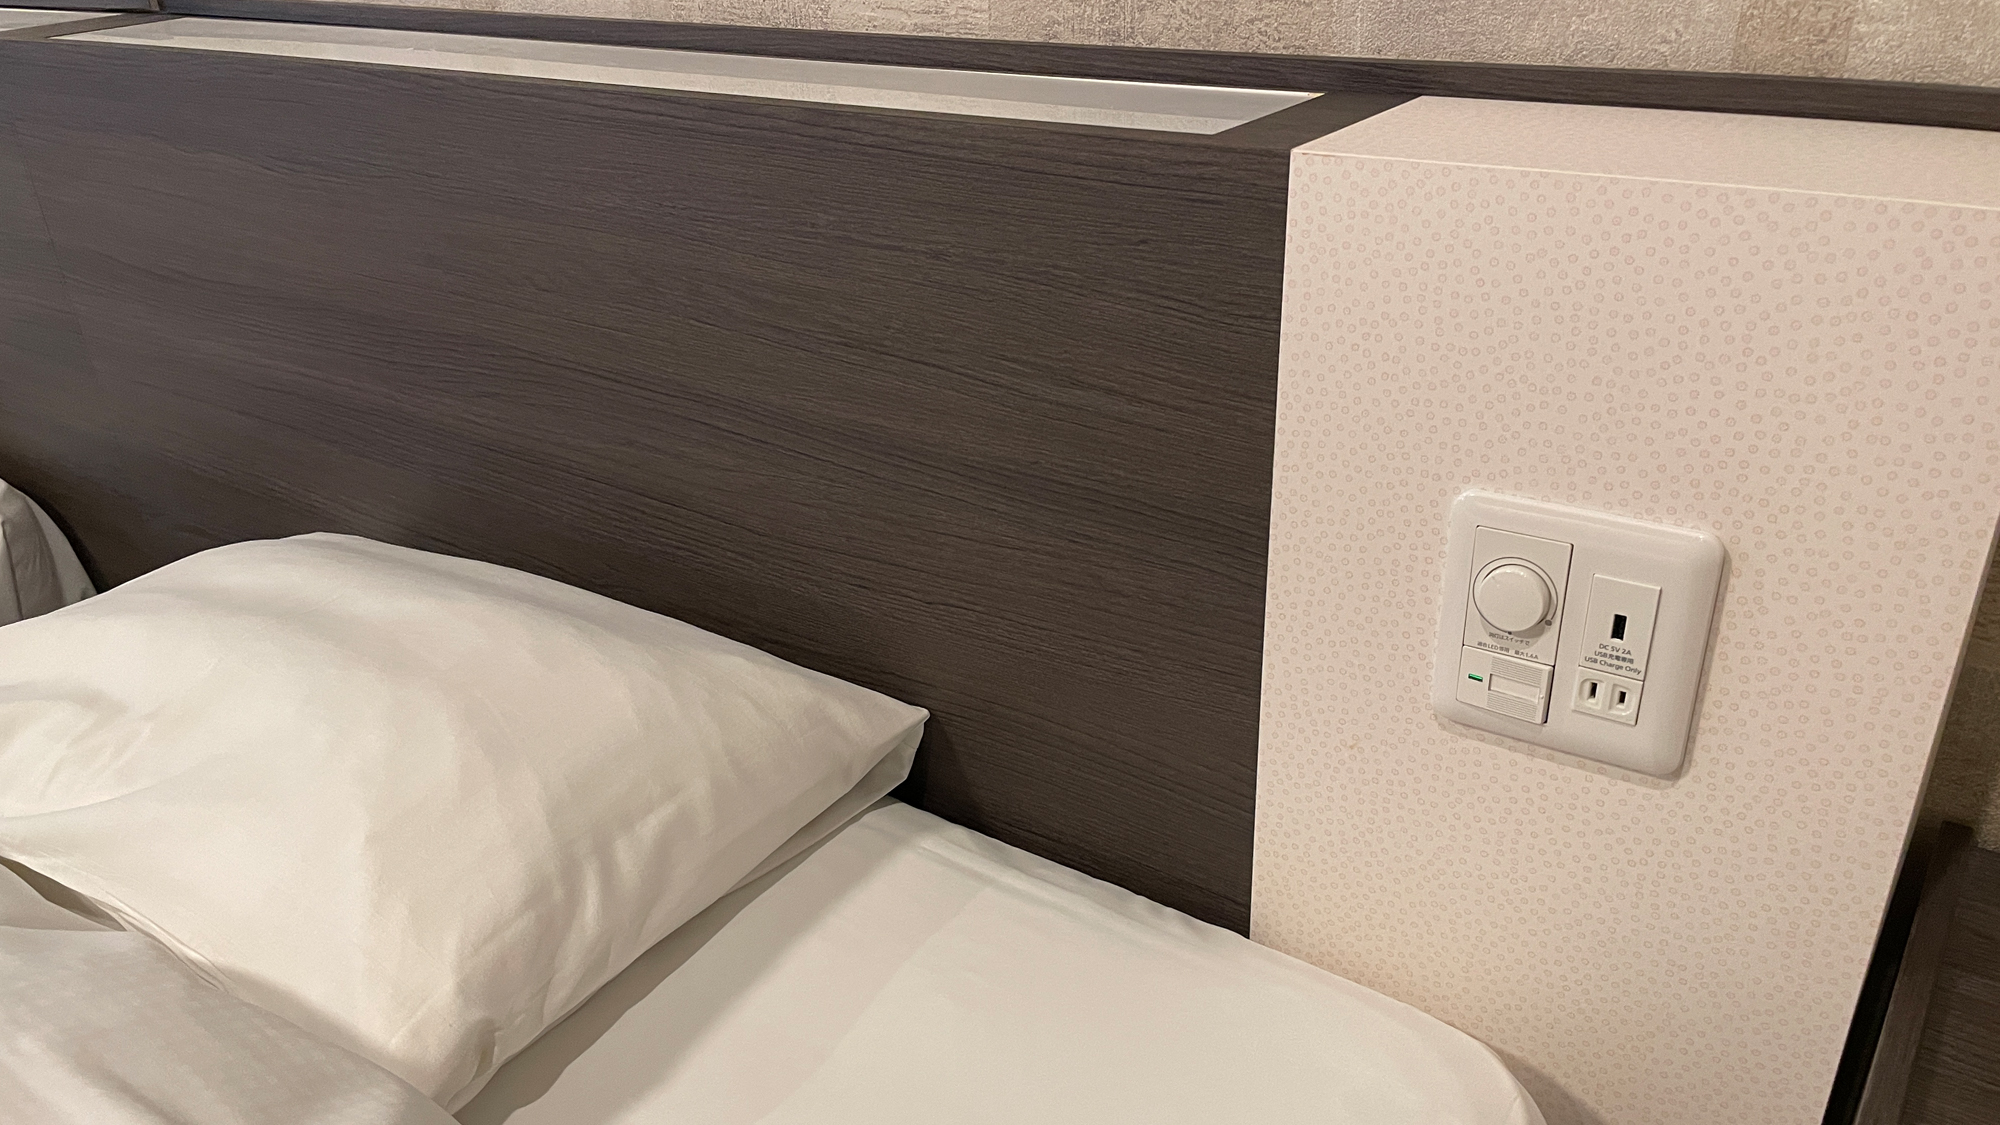 【和モダン】枕元にはUSBにも対応したコンセント。お休み中でもお手元で充電状況をチェックできます。